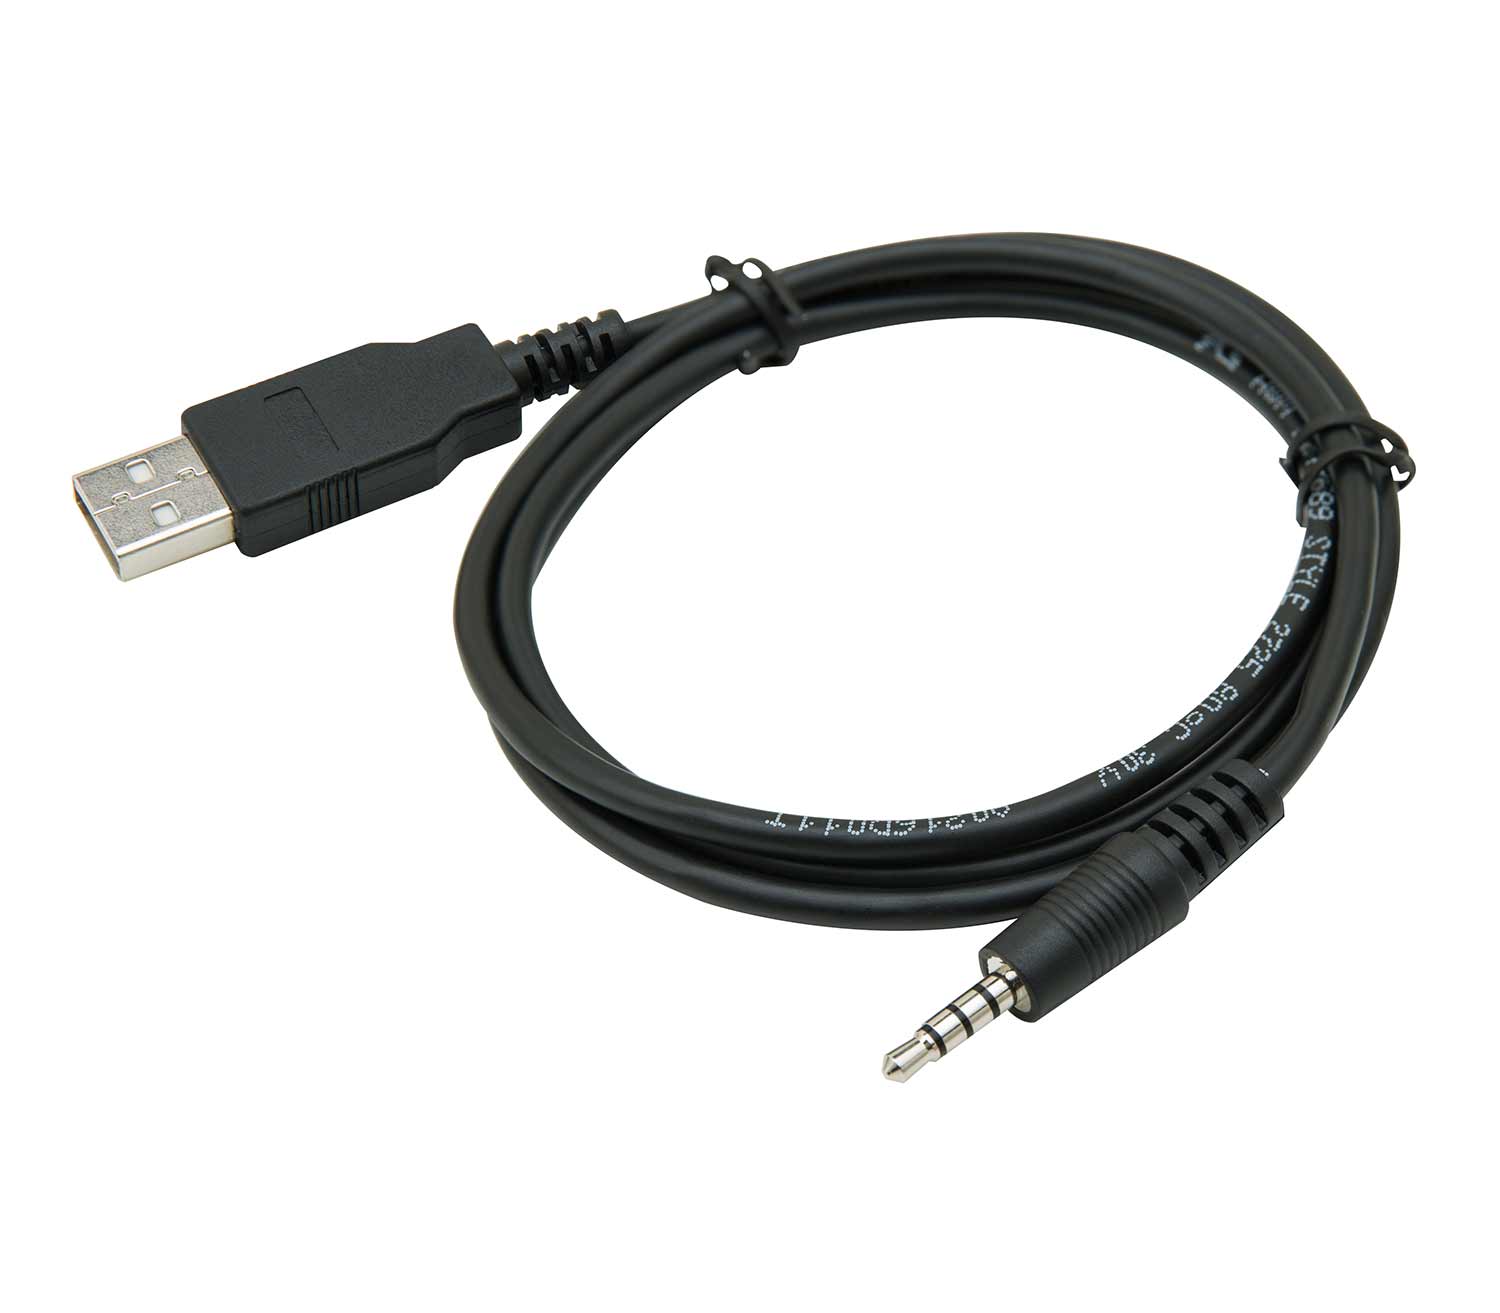 Kit de Soporte Transcend TS-DBK1 cable USB